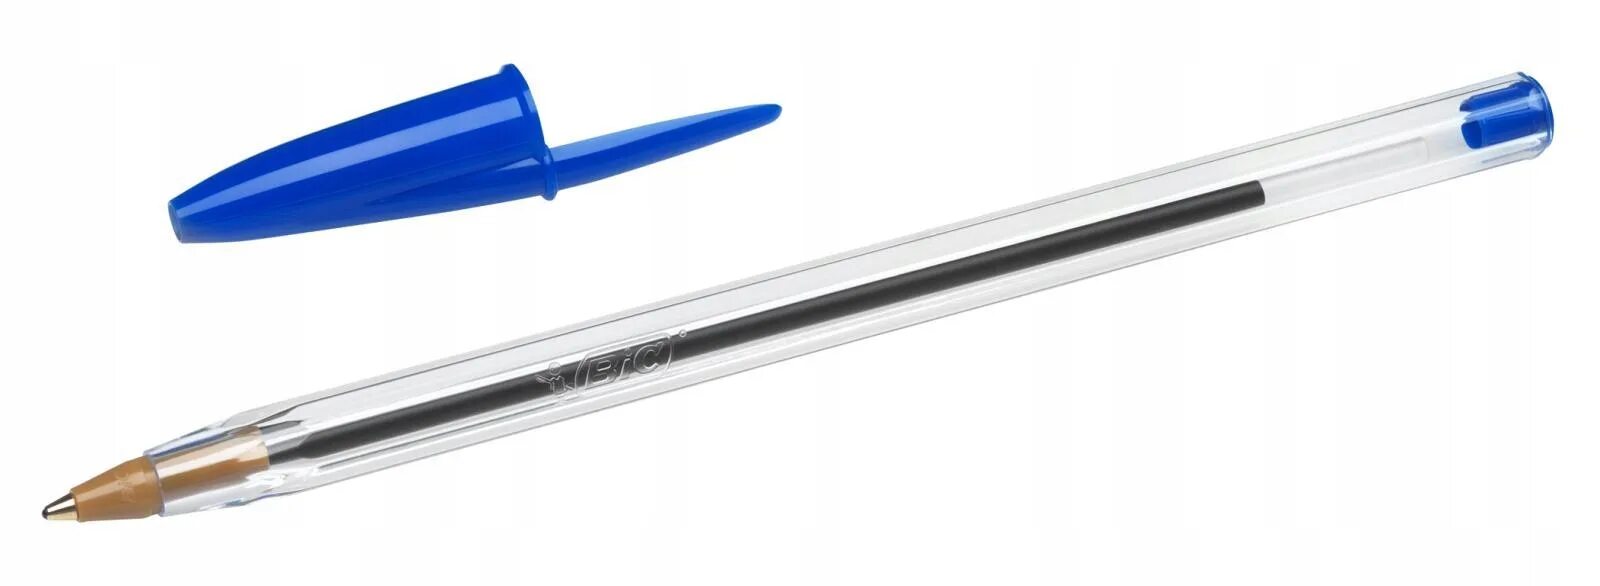 Ручка шариковая BIC Cristal Original синяя. Ручка шариковая BIC 1.6 mm синяя. Ручка шариковая синяя 0,7мм Cristal exact 992605 BIC. Ручки шариковые BIC Medium. Шариковые ручки оригинал